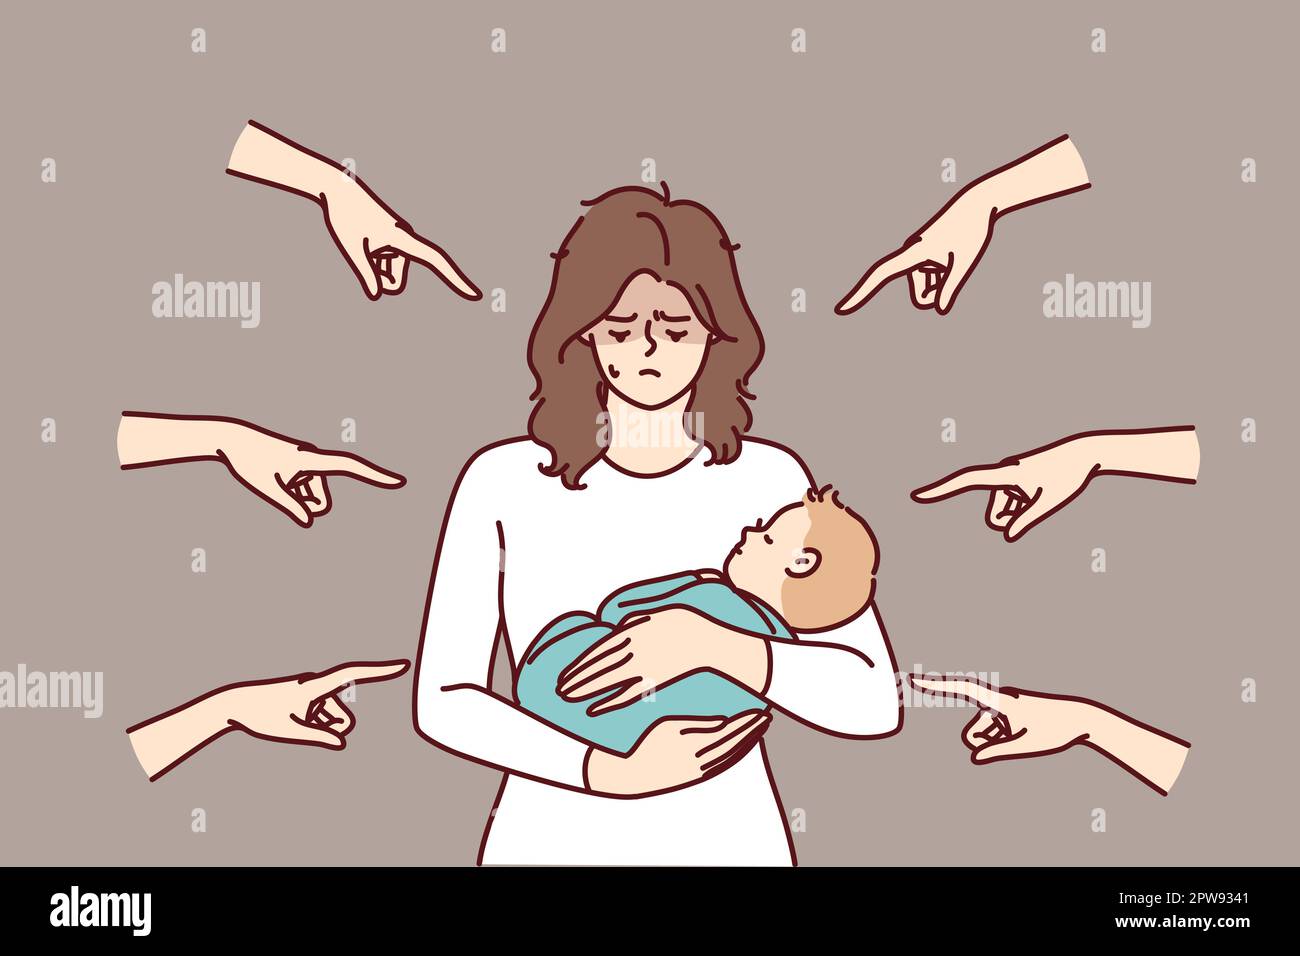 La jeune mère avec le bébé dans les bras a honte parce que la condamnation entourant les personnes pointant des doigts Illustration de Vecteur